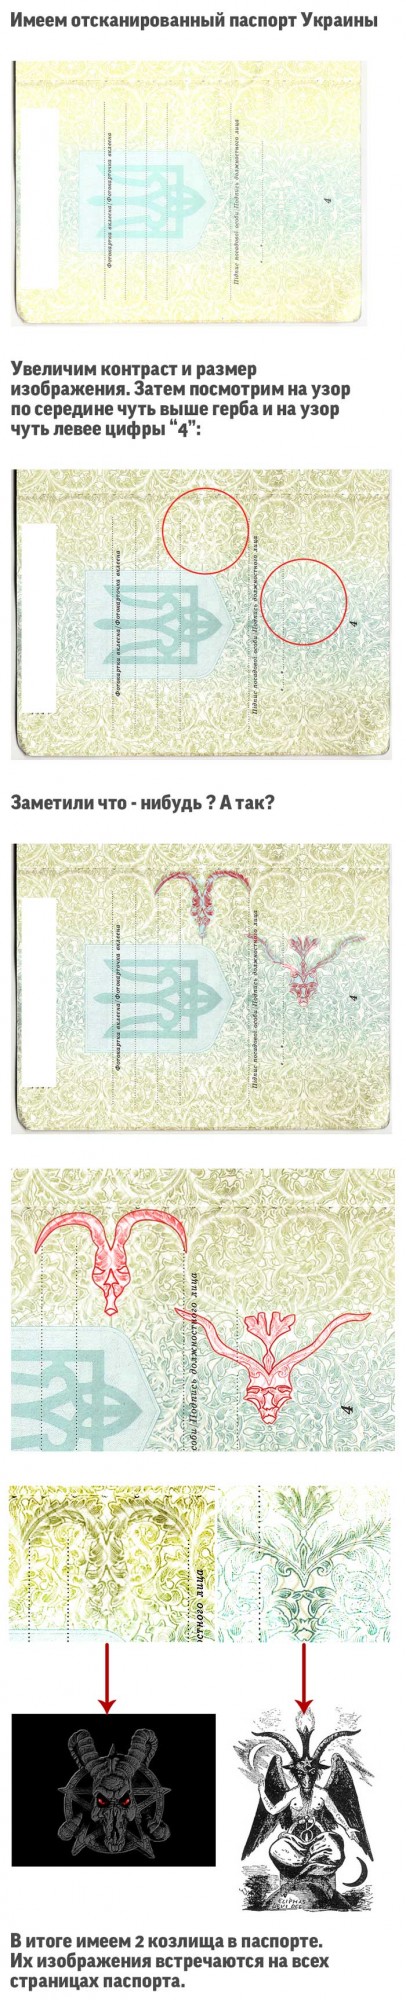 Лики сатаны в паспорте Украины